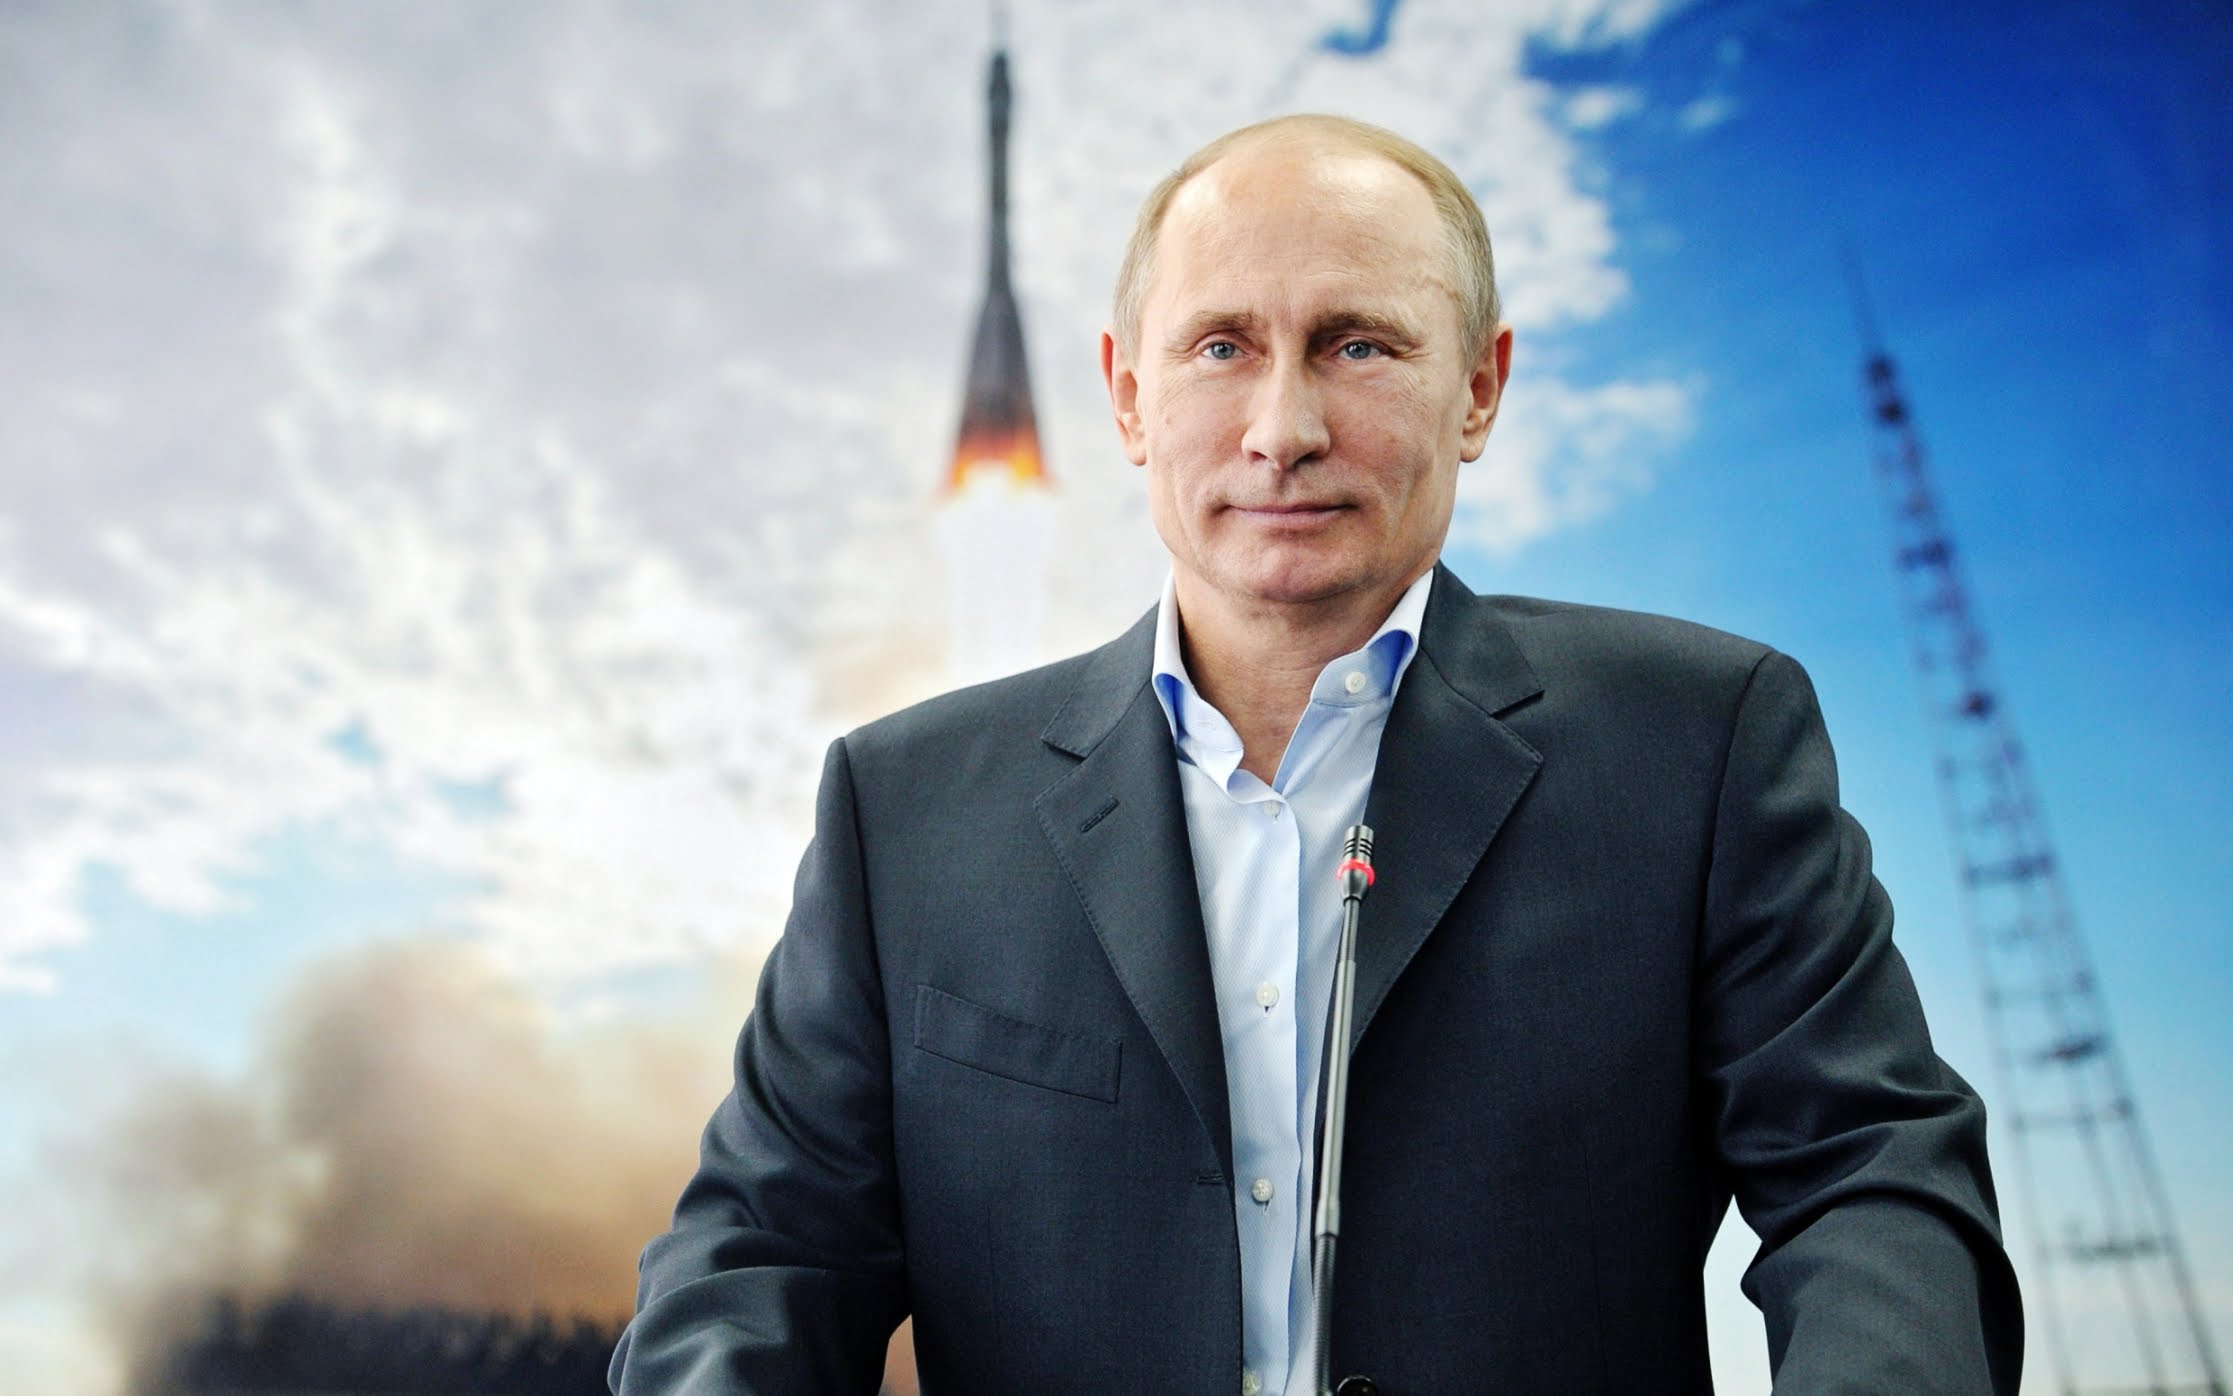  России доверять нельзя: Путин уже давно объявил войну Европе - эксперт Бланк